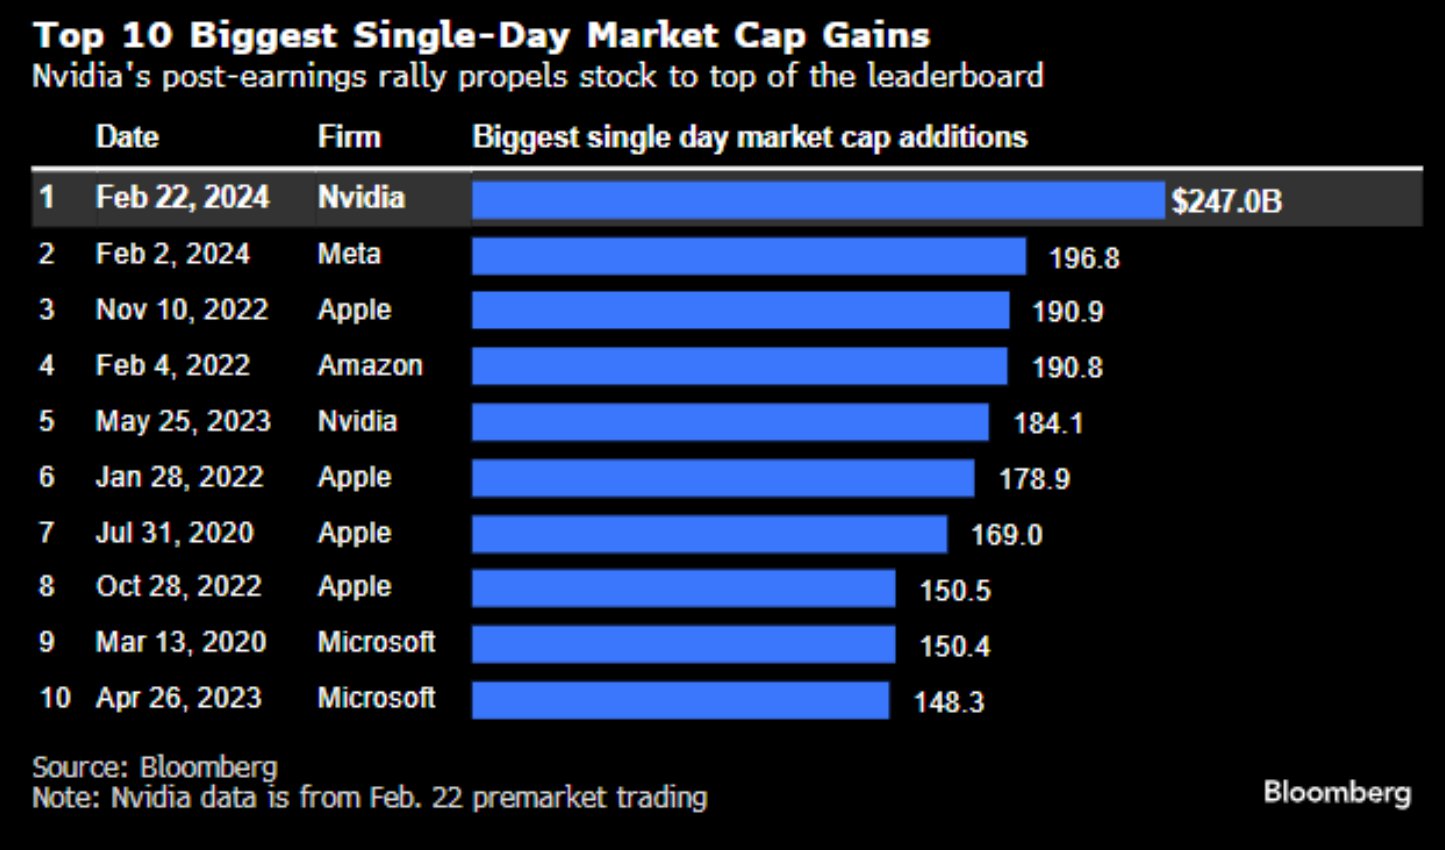 Top 10 des plus gros gains de capitalisation boursière sur une seule journée : (Source : Bloomberg)